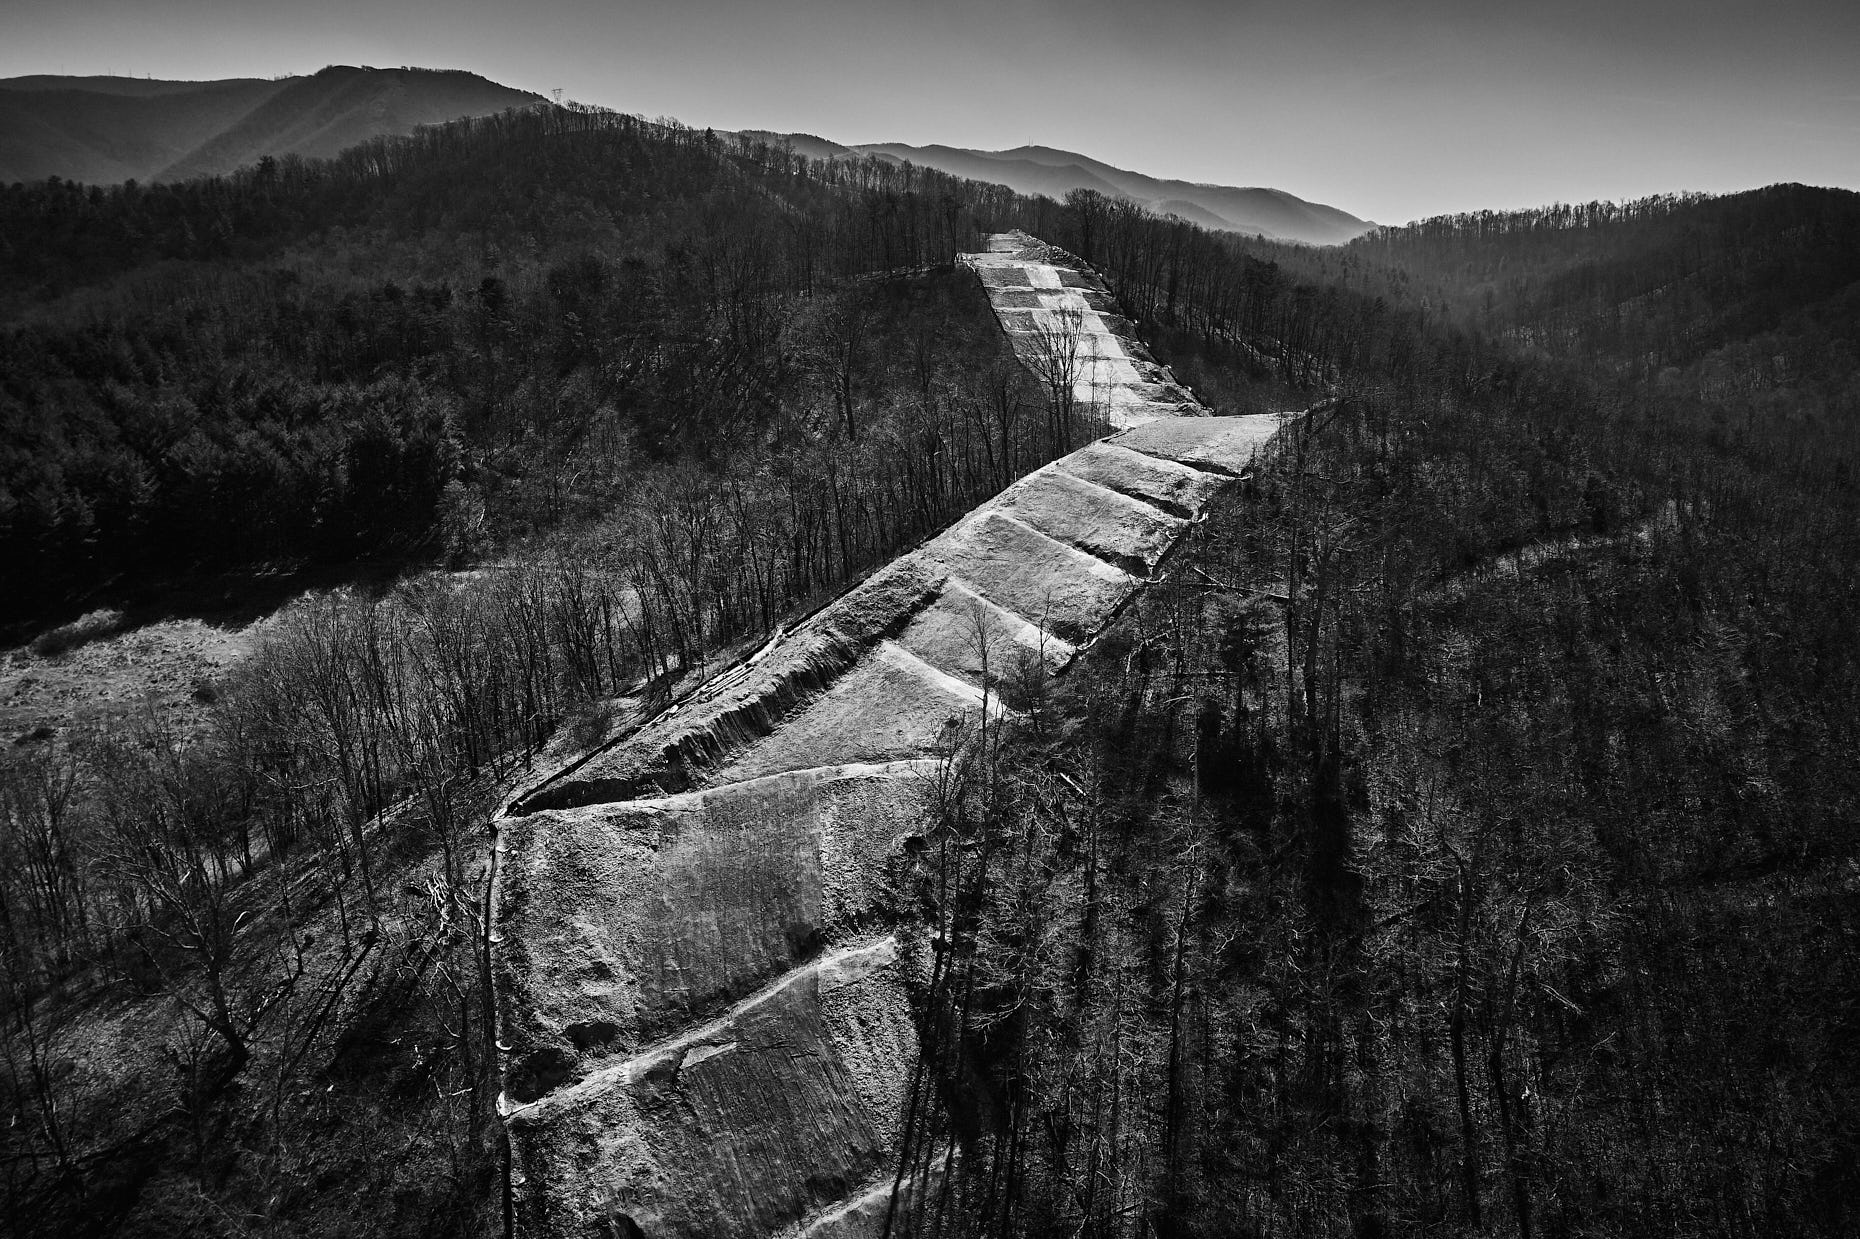 Mountain Valley Pipeline | Virginia } Cameron Davidson